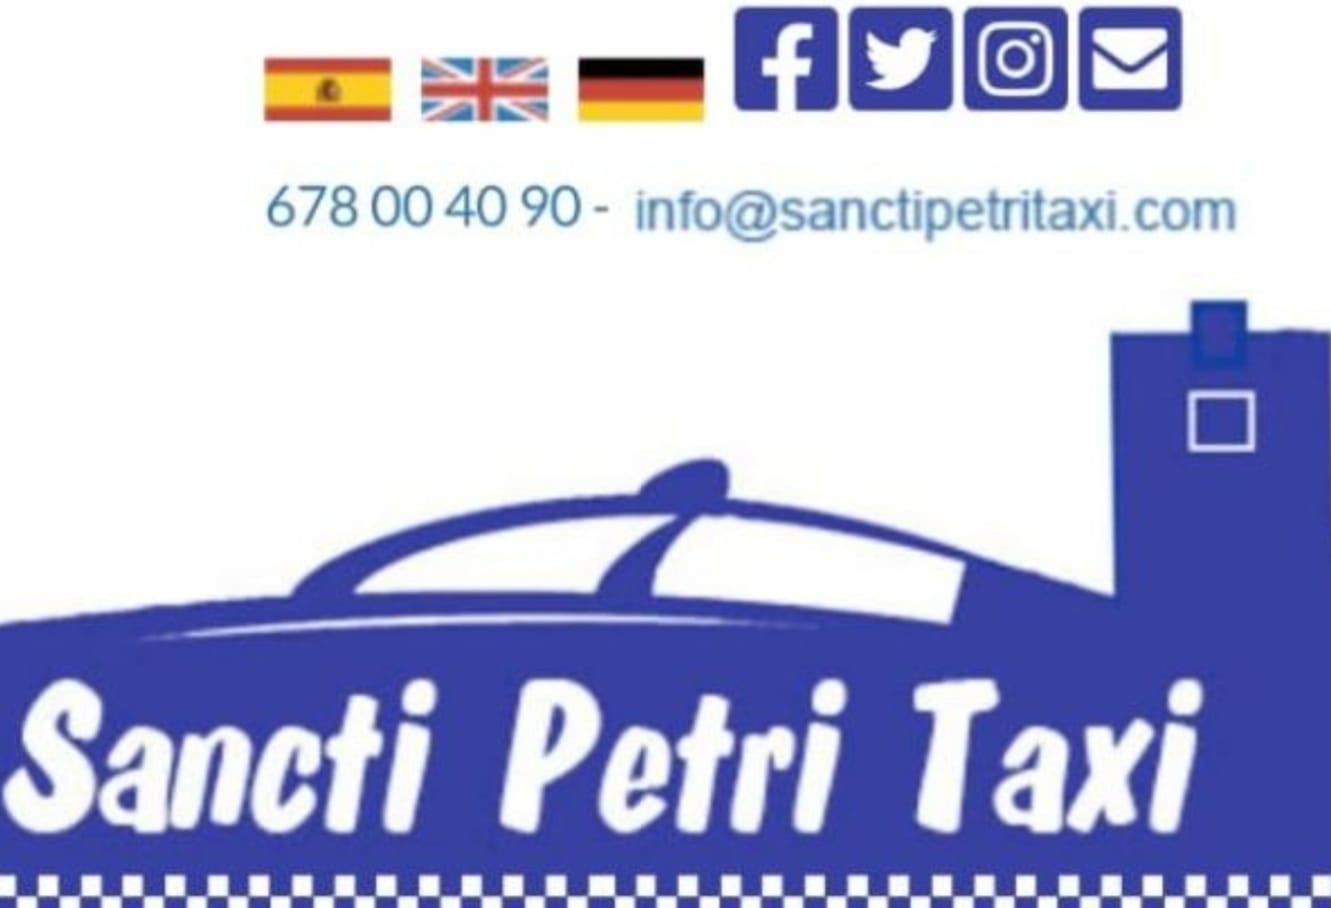 Taxi 24 Horas Sancti Petri (Taxi Chiclana de la Frontera)